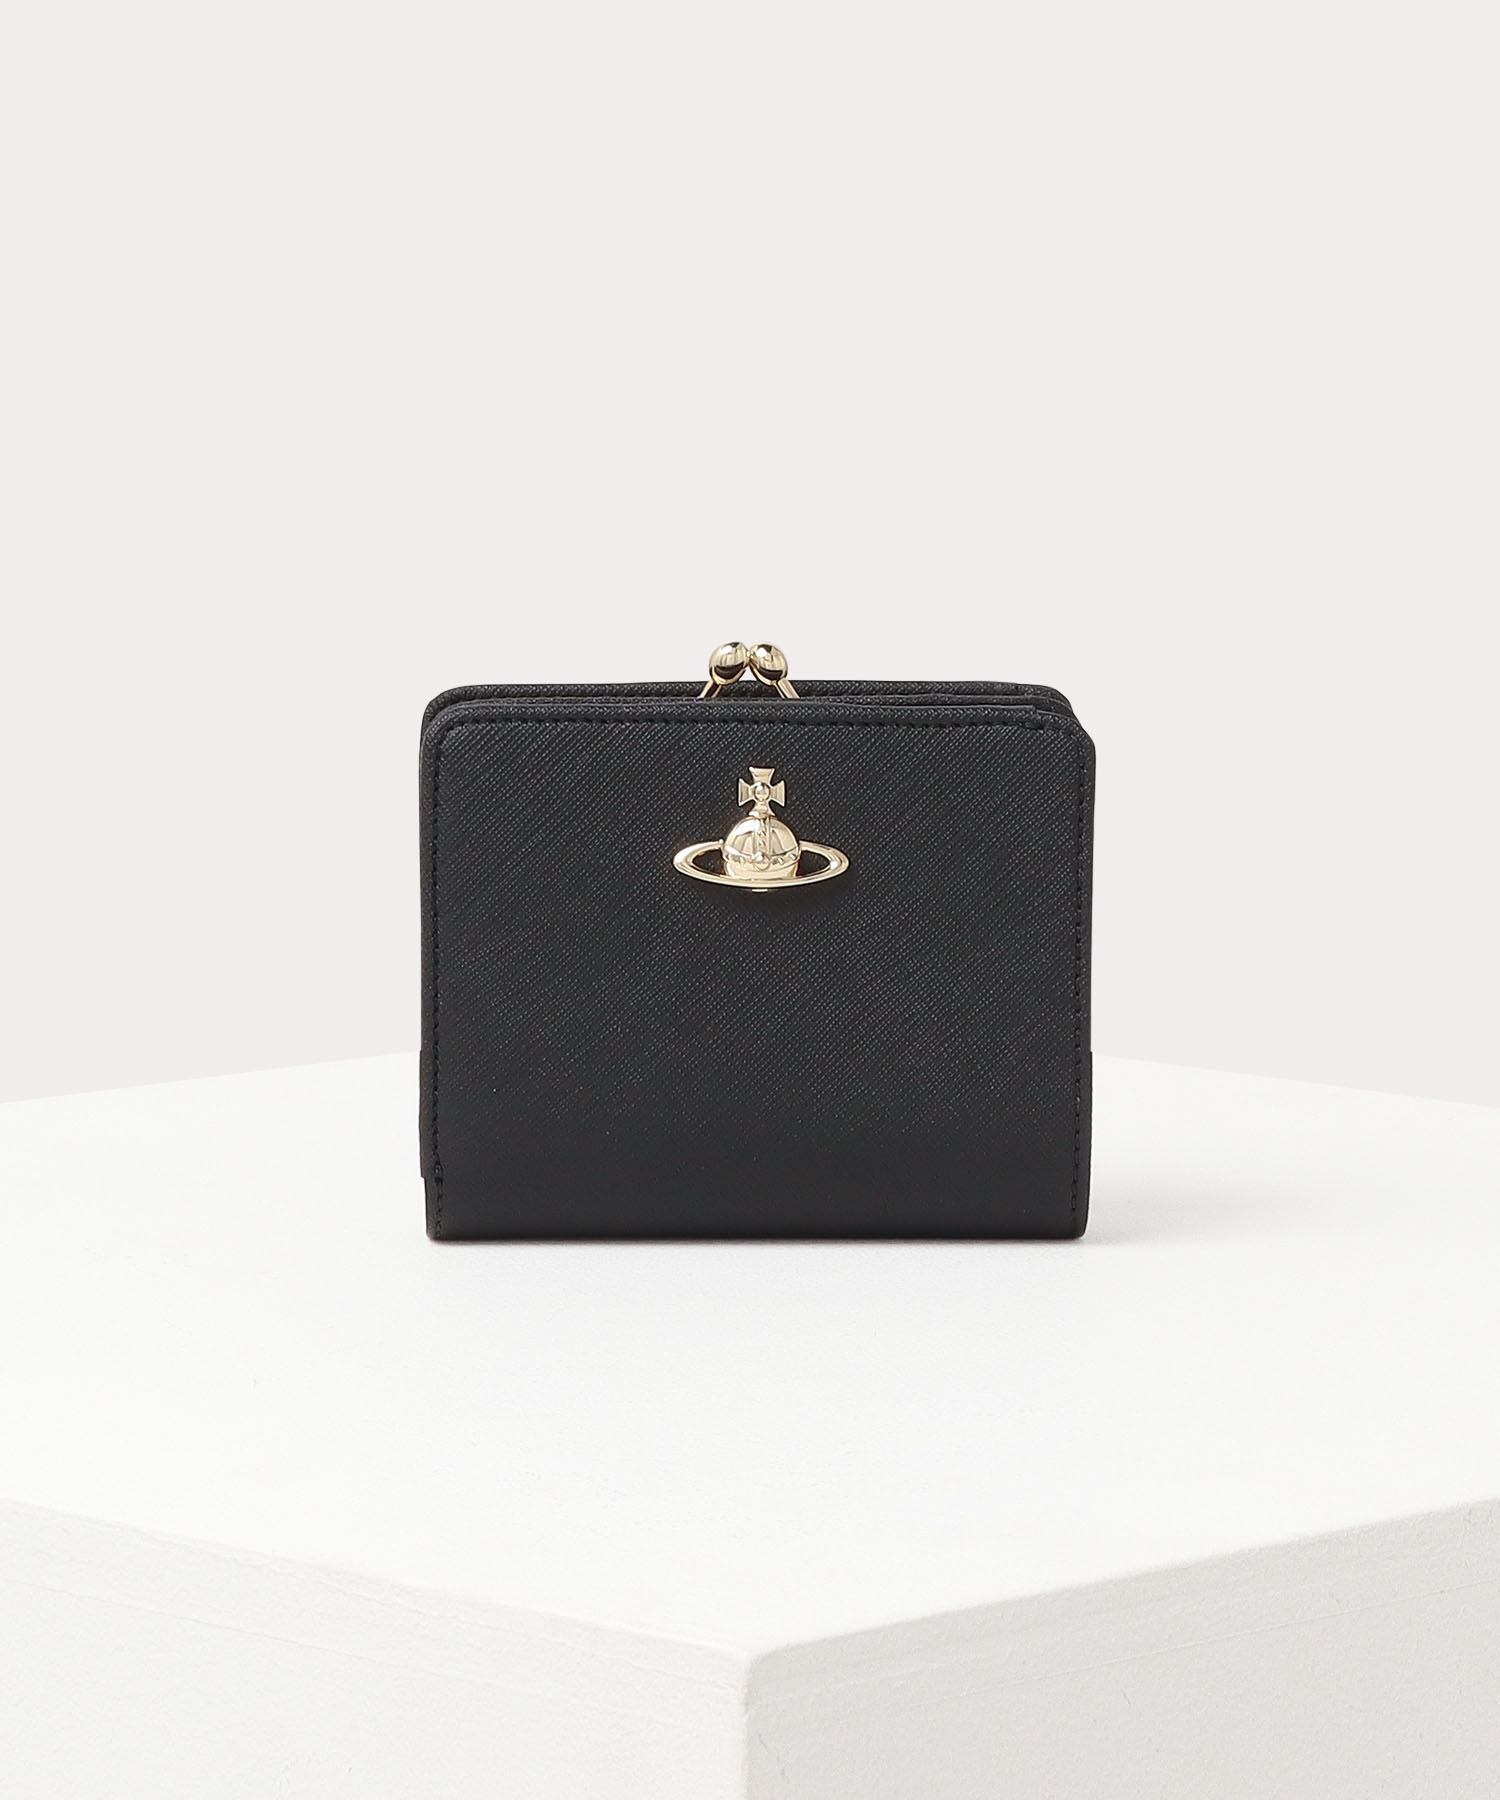 カラーブラックVivienne Westwood SAFFIANO” 口金二つ折り財布